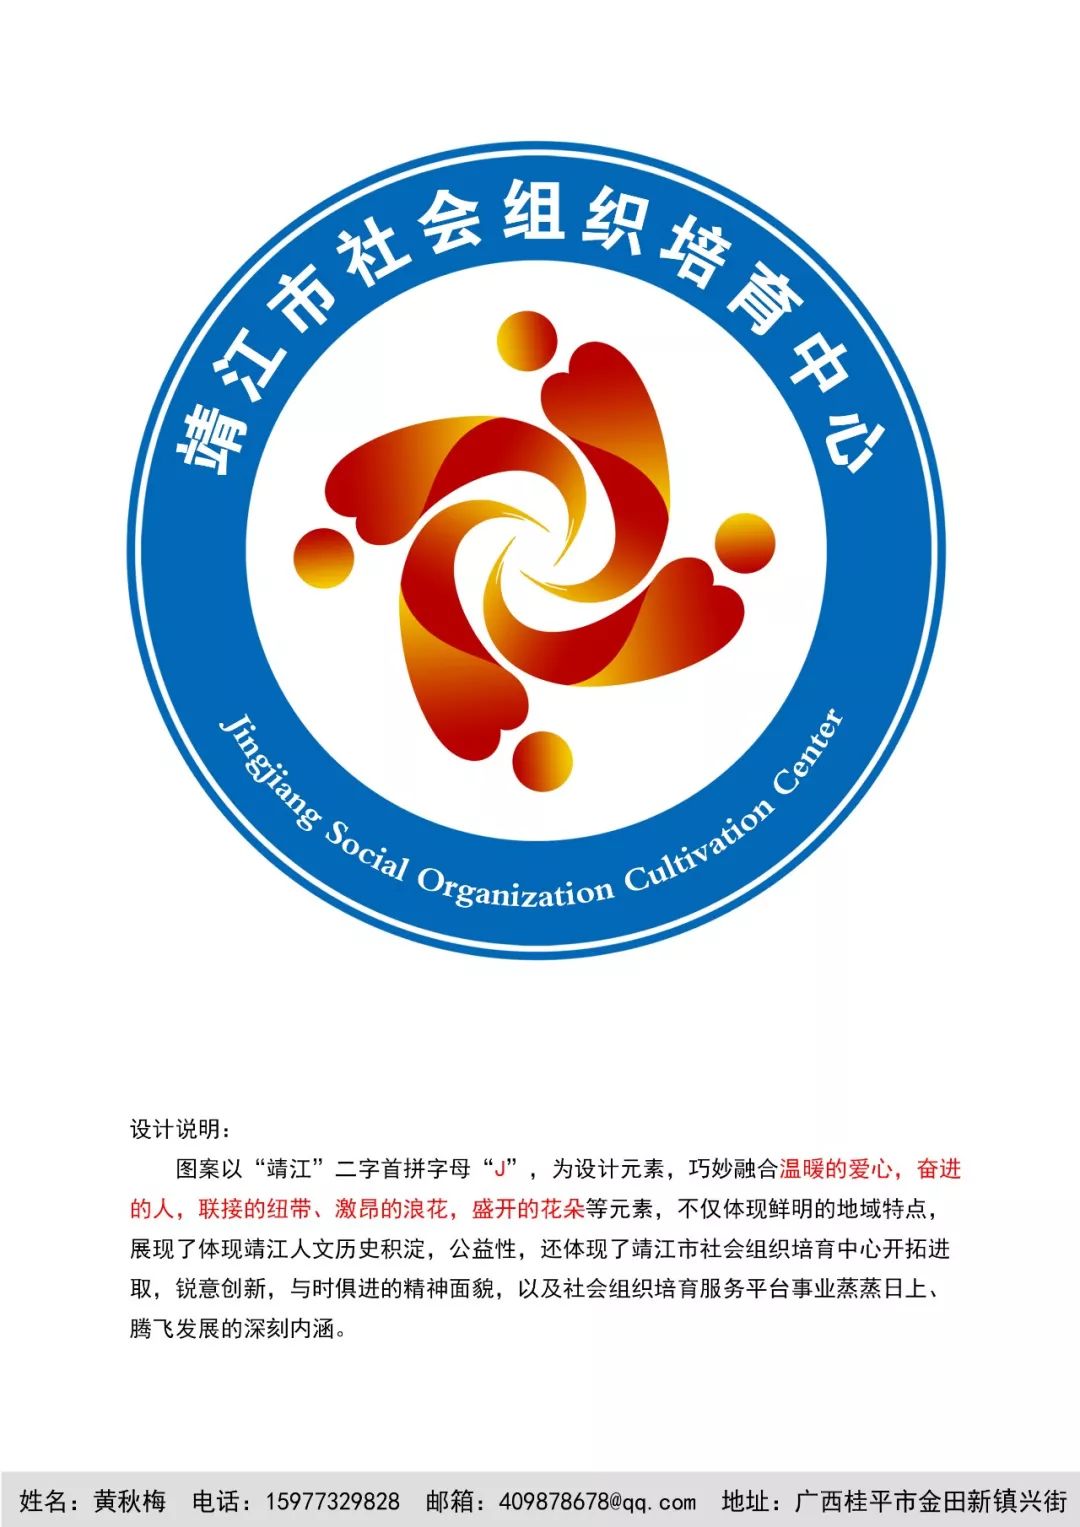 靖江市社会组织培育中心logo征集网上投票 